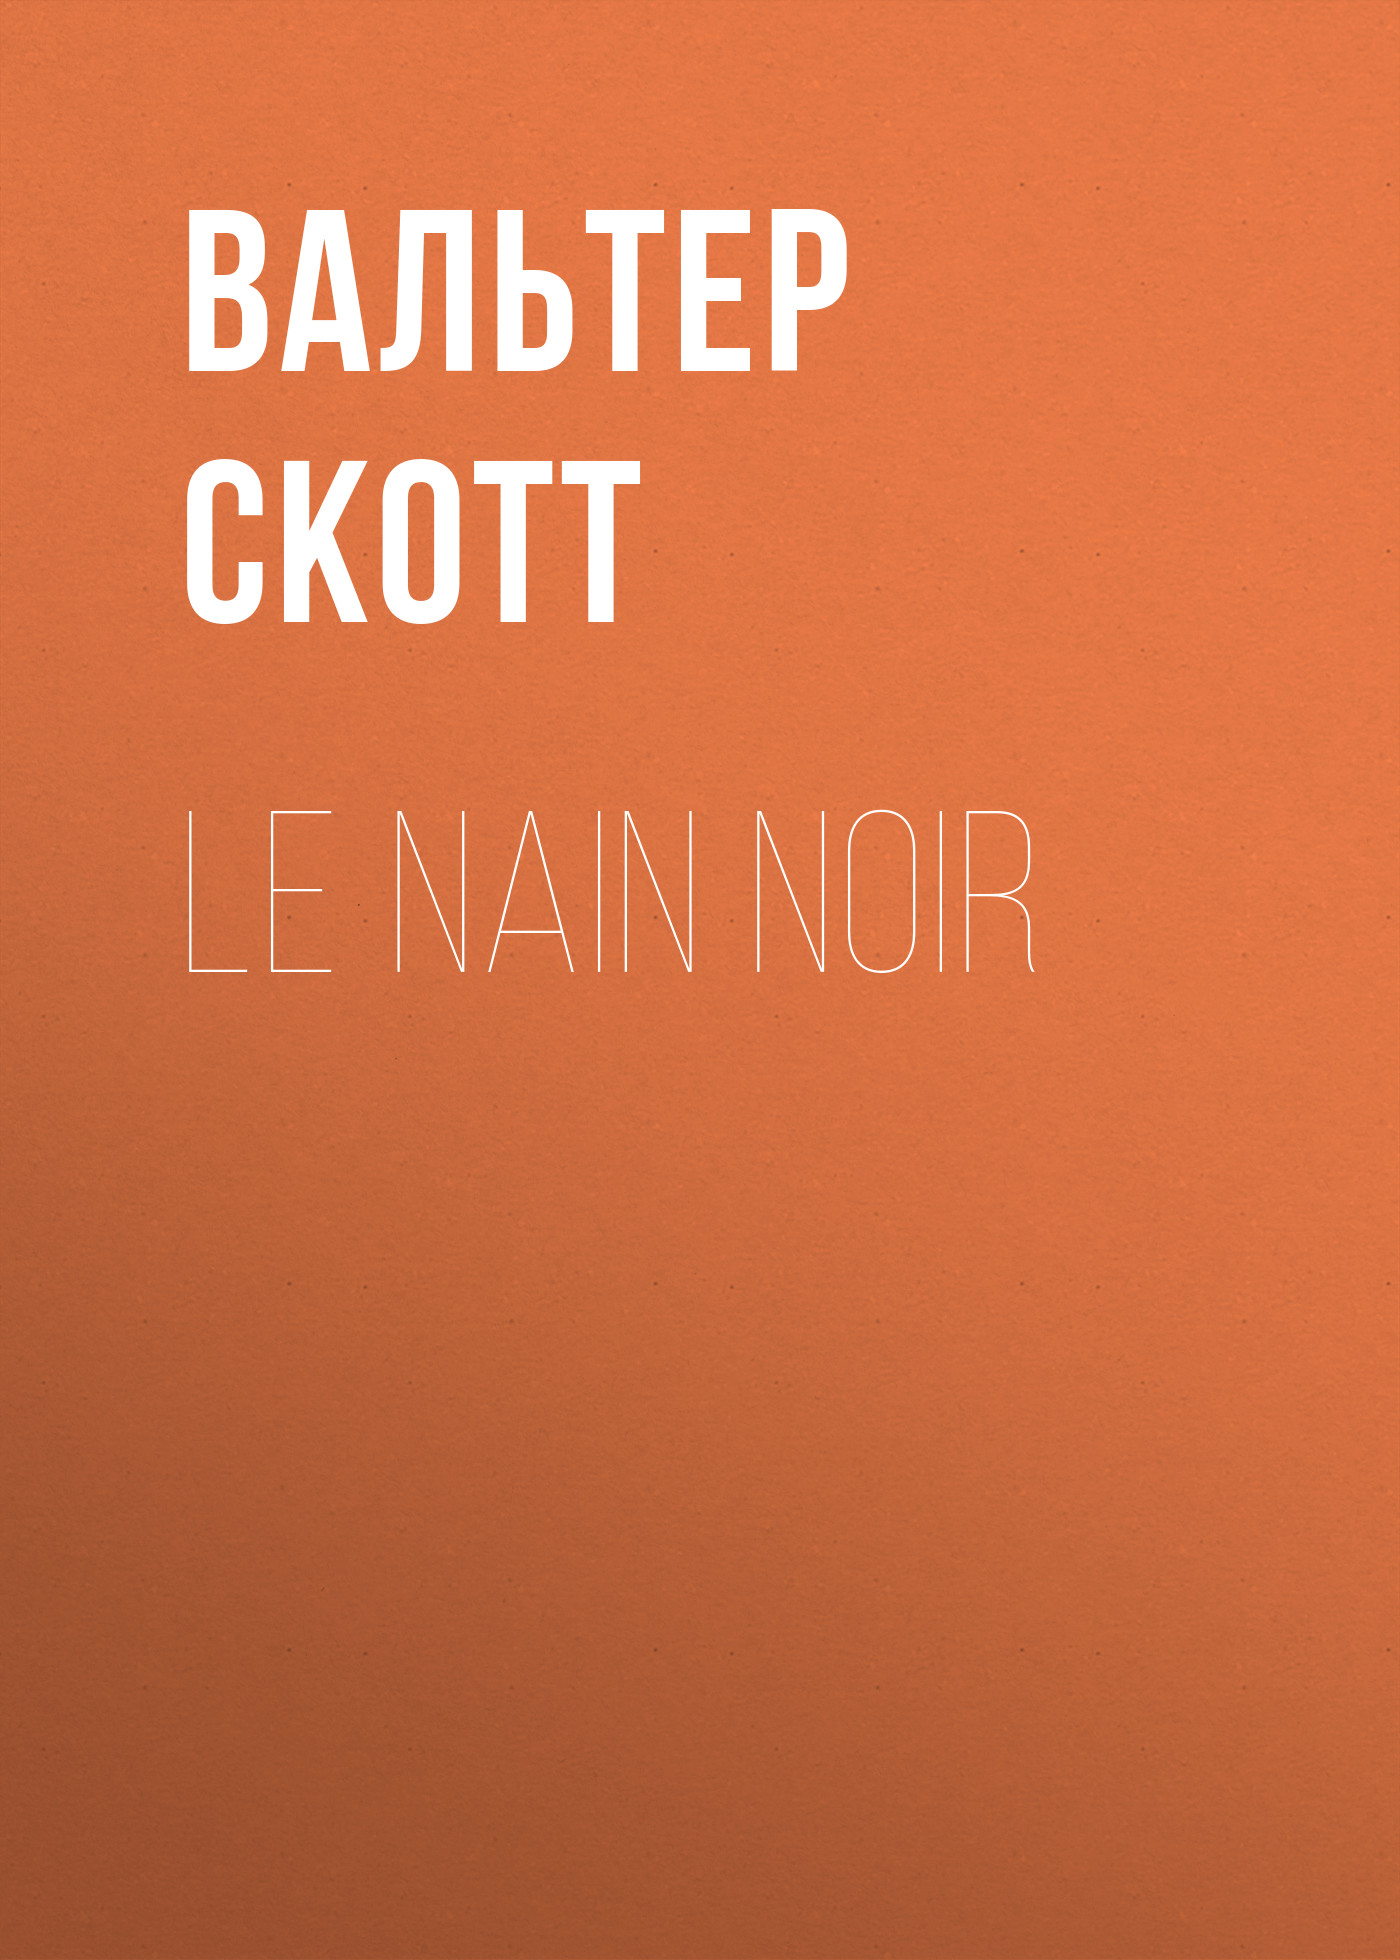 Книга Le nain noir из серии , созданная Вальтер Скотт, может относится к жанру Зарубежная старинная литература, Зарубежная классика. Стоимость электронной книги Le nain noir с идентификатором 25450788 составляет 0 руб.